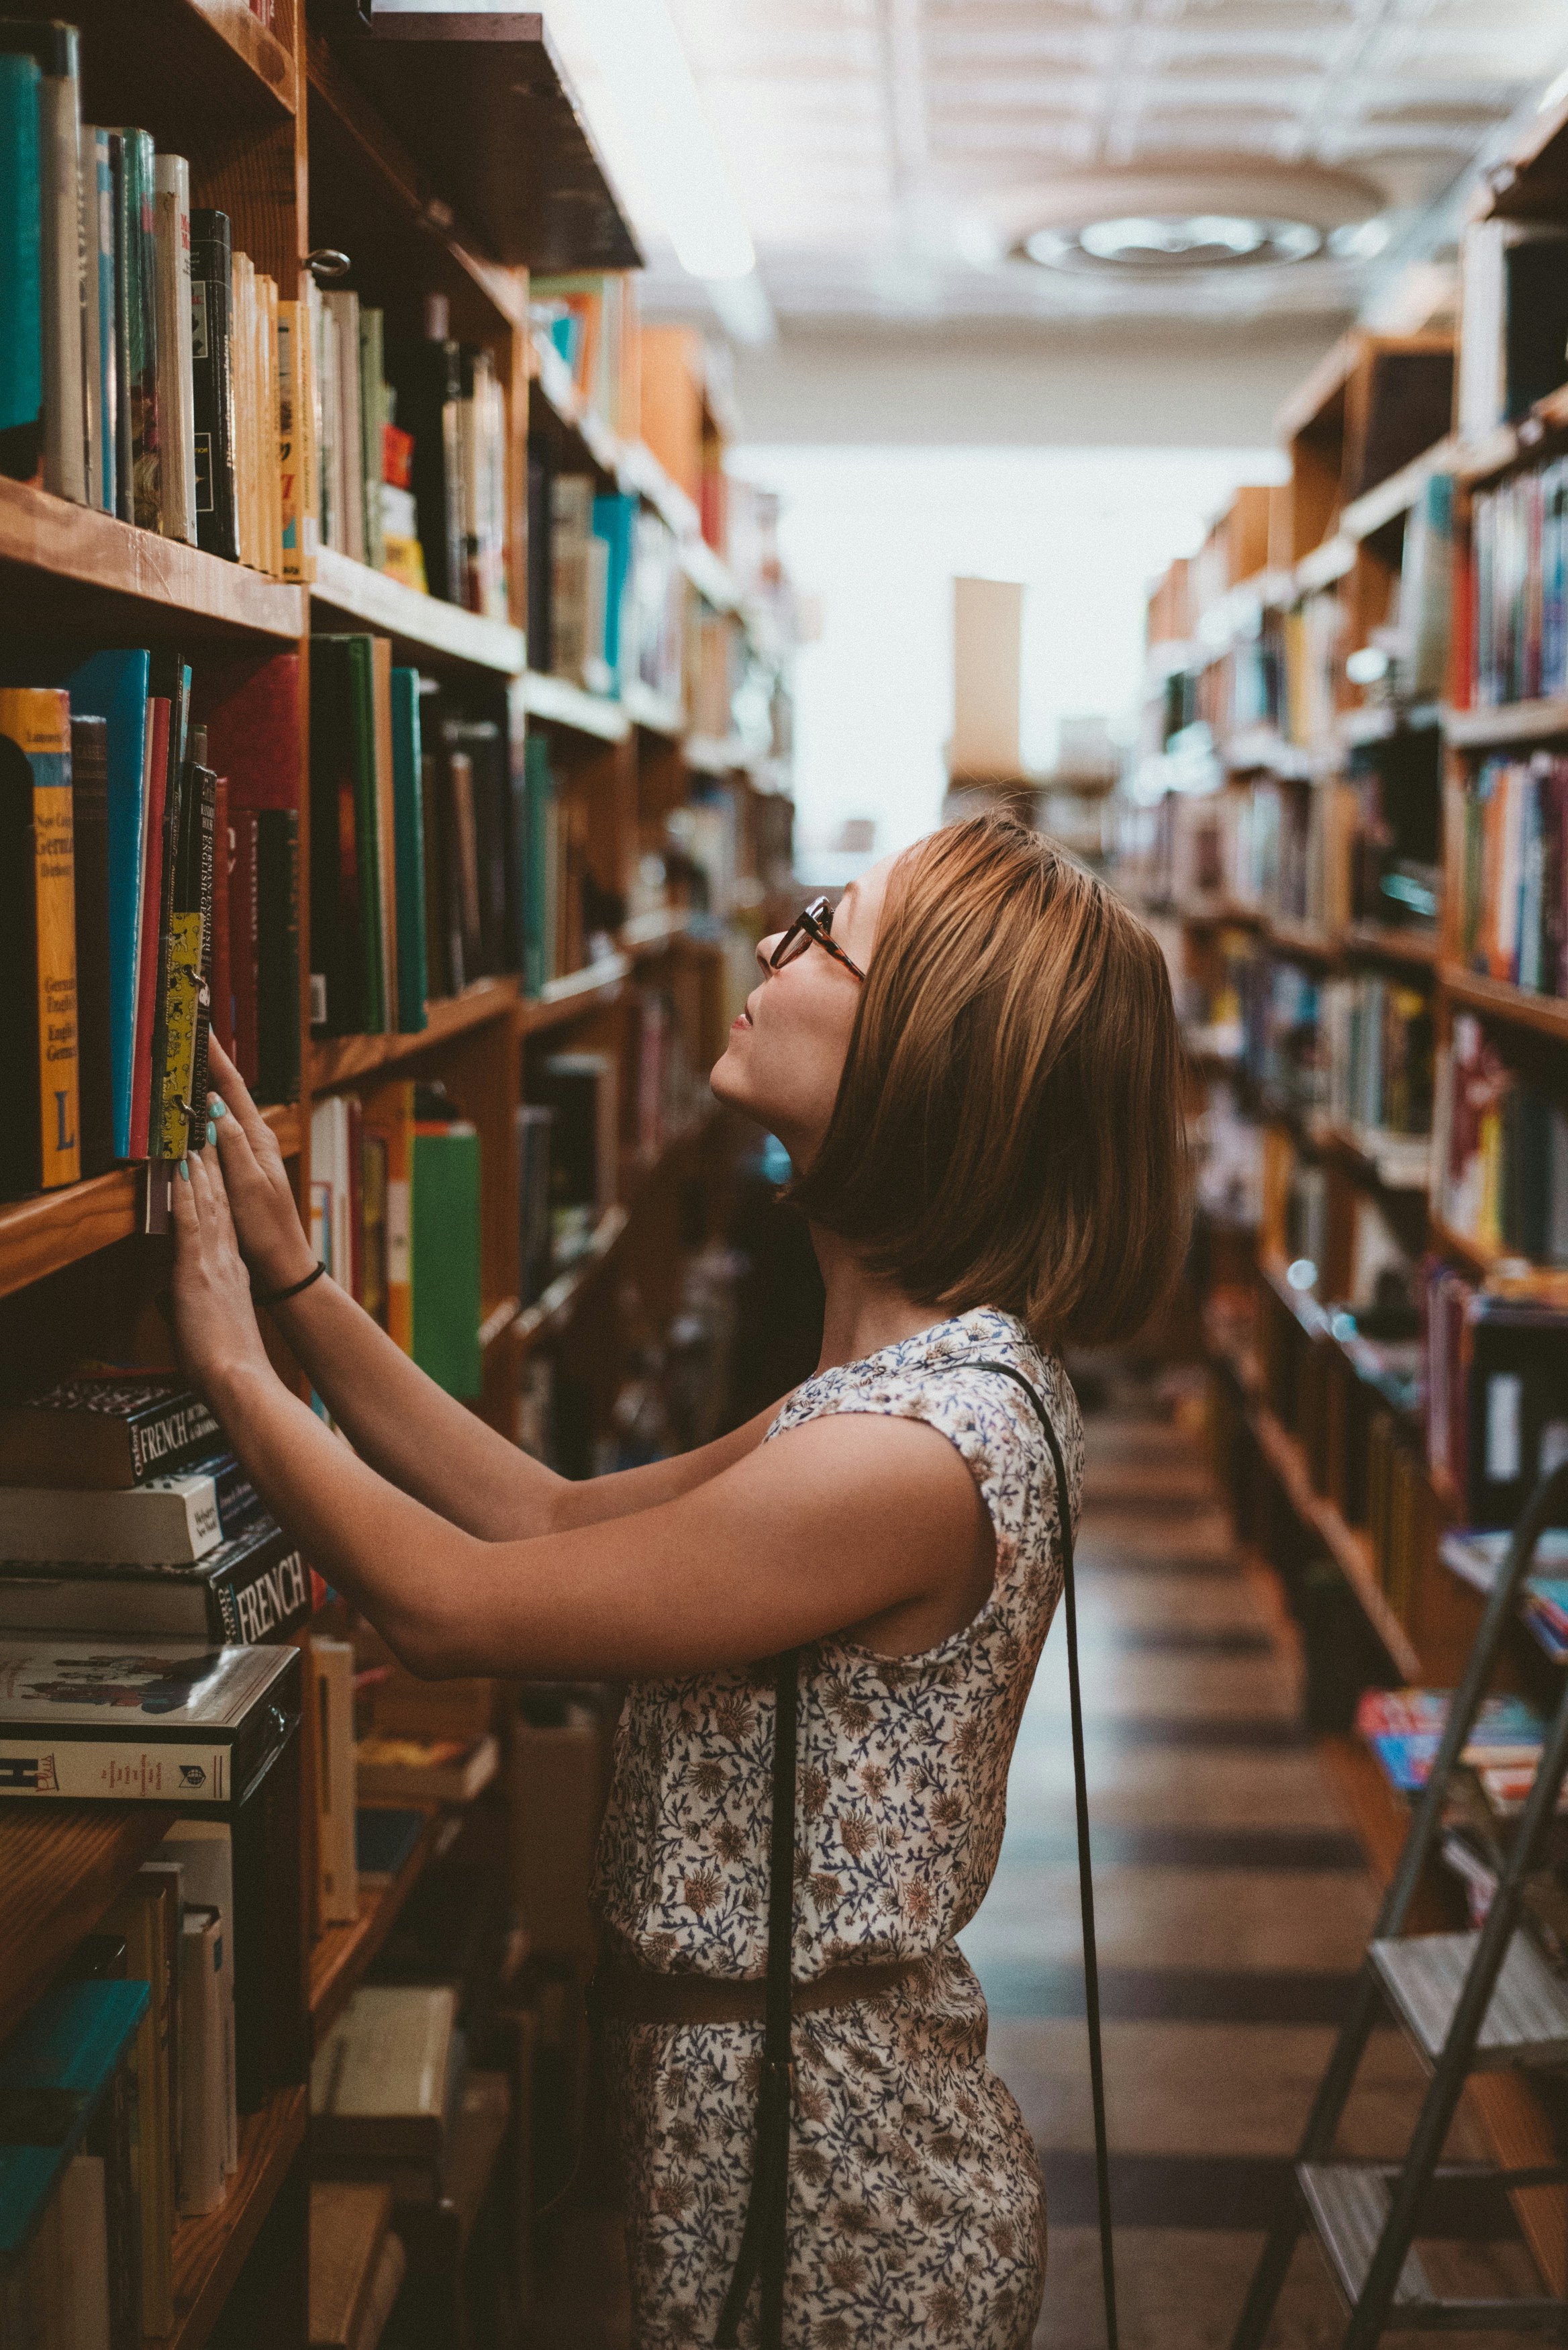 Una mujer busca un libro en una biblioteca | Fuente: Unsplash